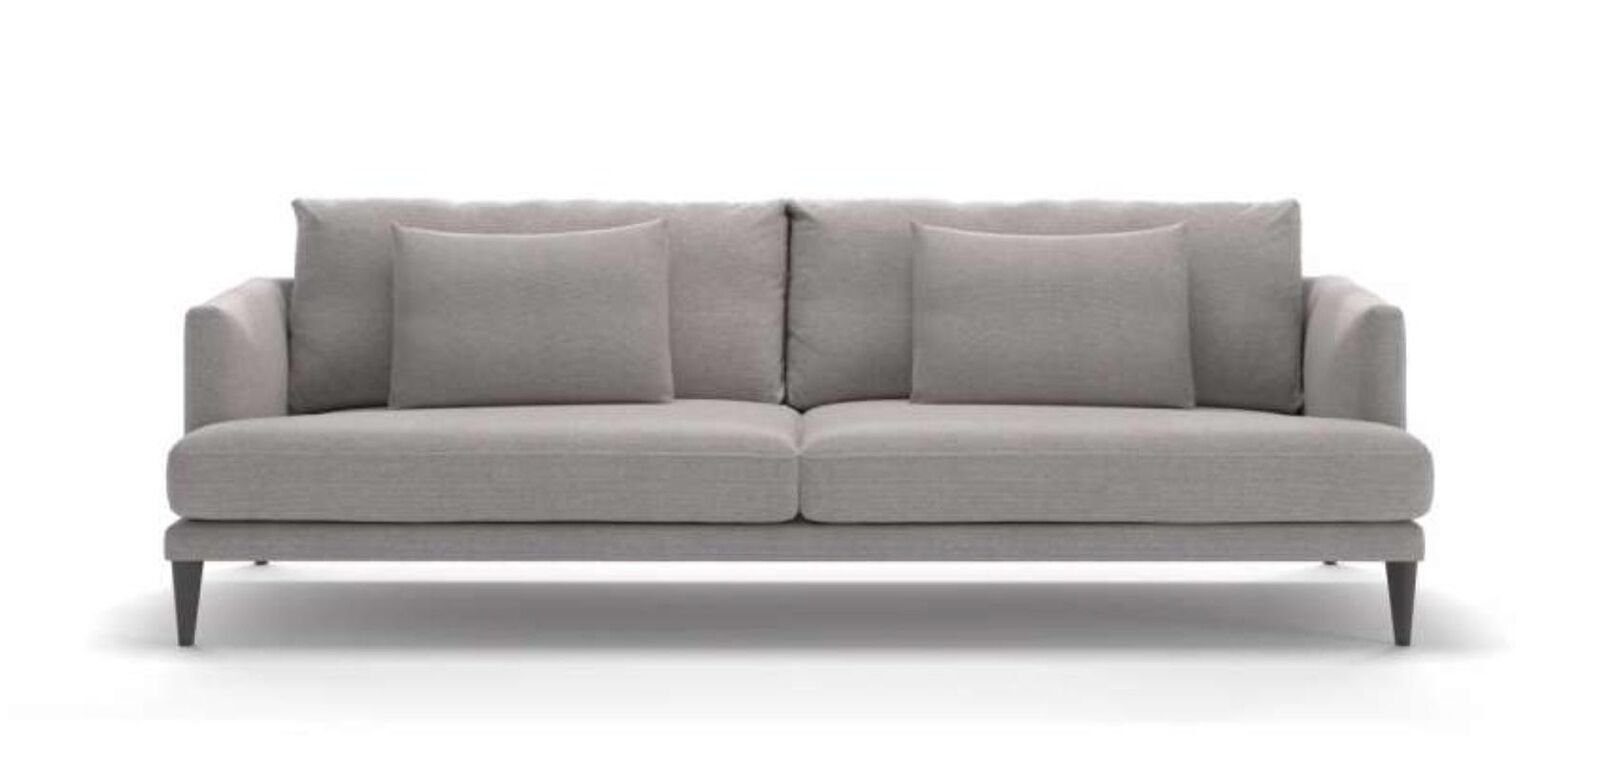 JVmoebel Sofa Zweisitzer Designer Luxus Graues Sofa Textilmöbel Wohnzimmer, 1 Teile, Made in Europe